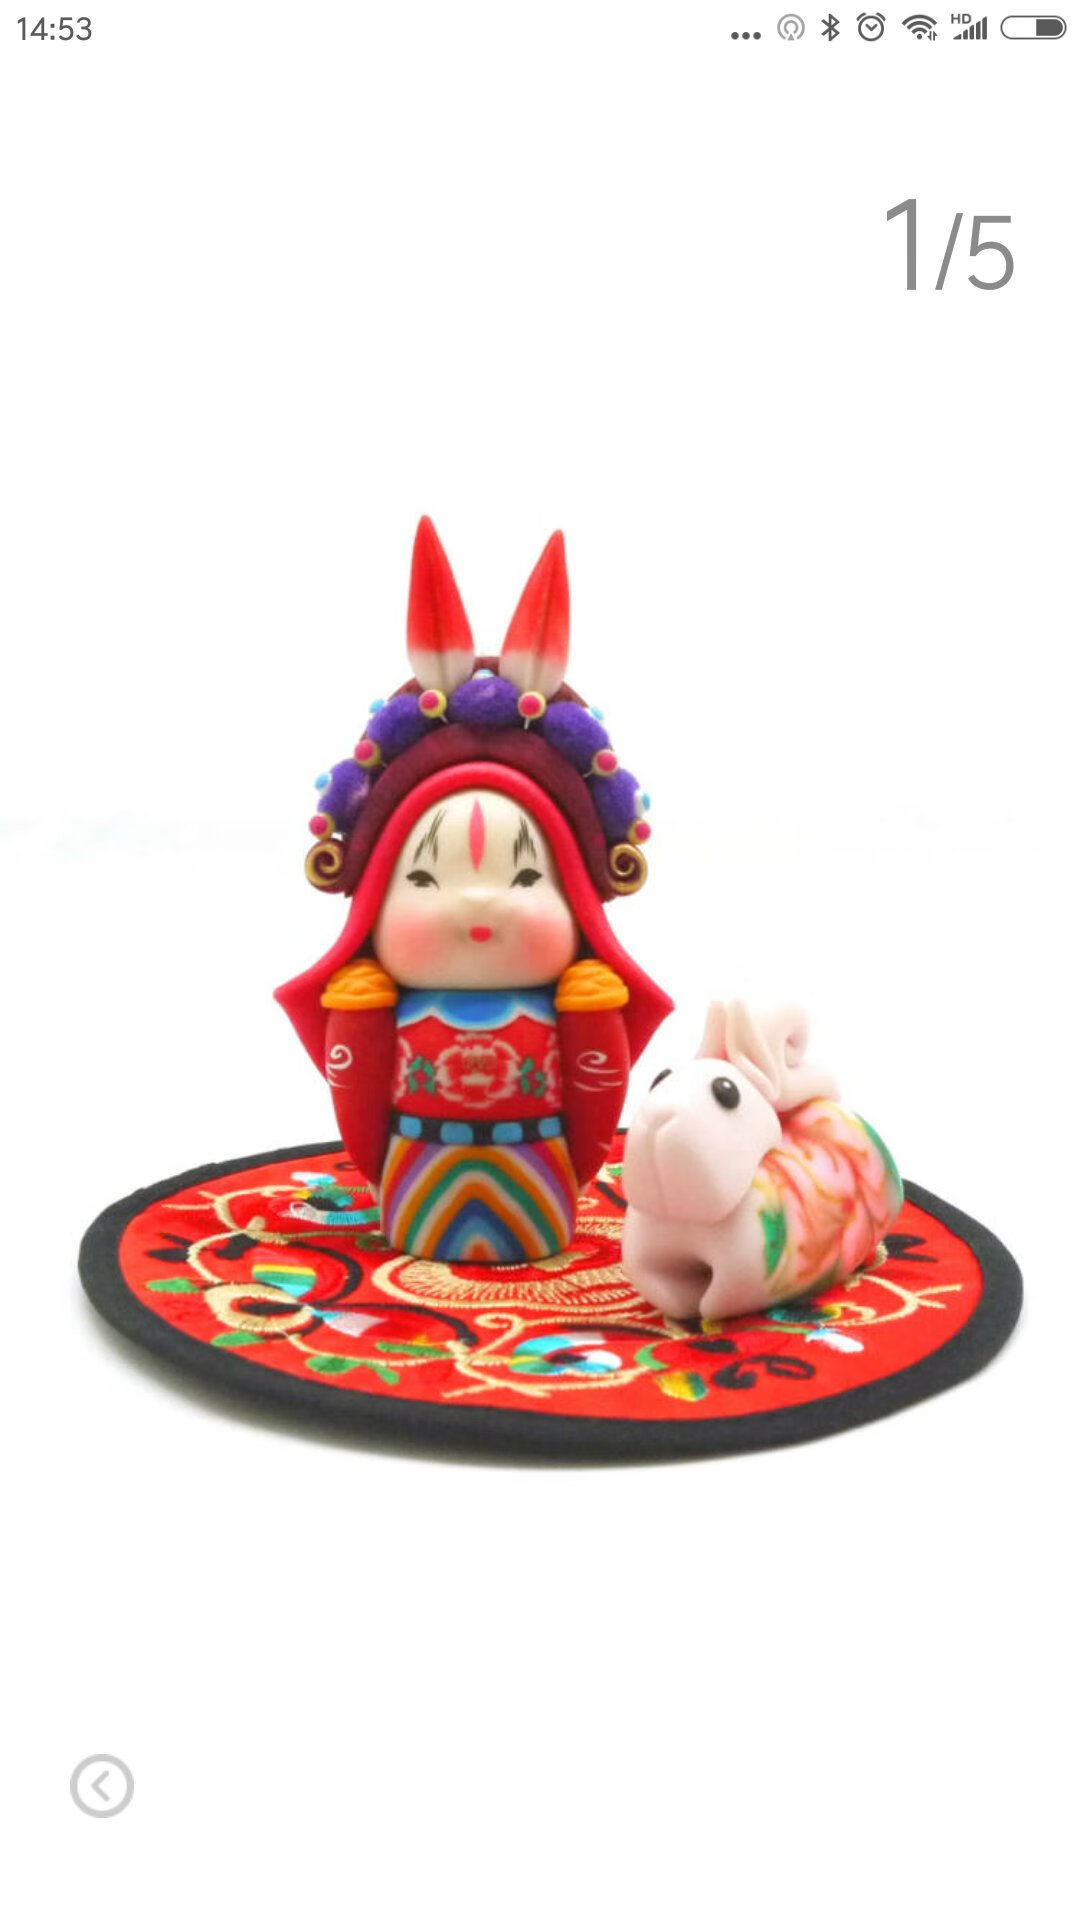 做工还不错，作为北京特色送给外地朋友还是有文化特色的，兔爷很有意思。